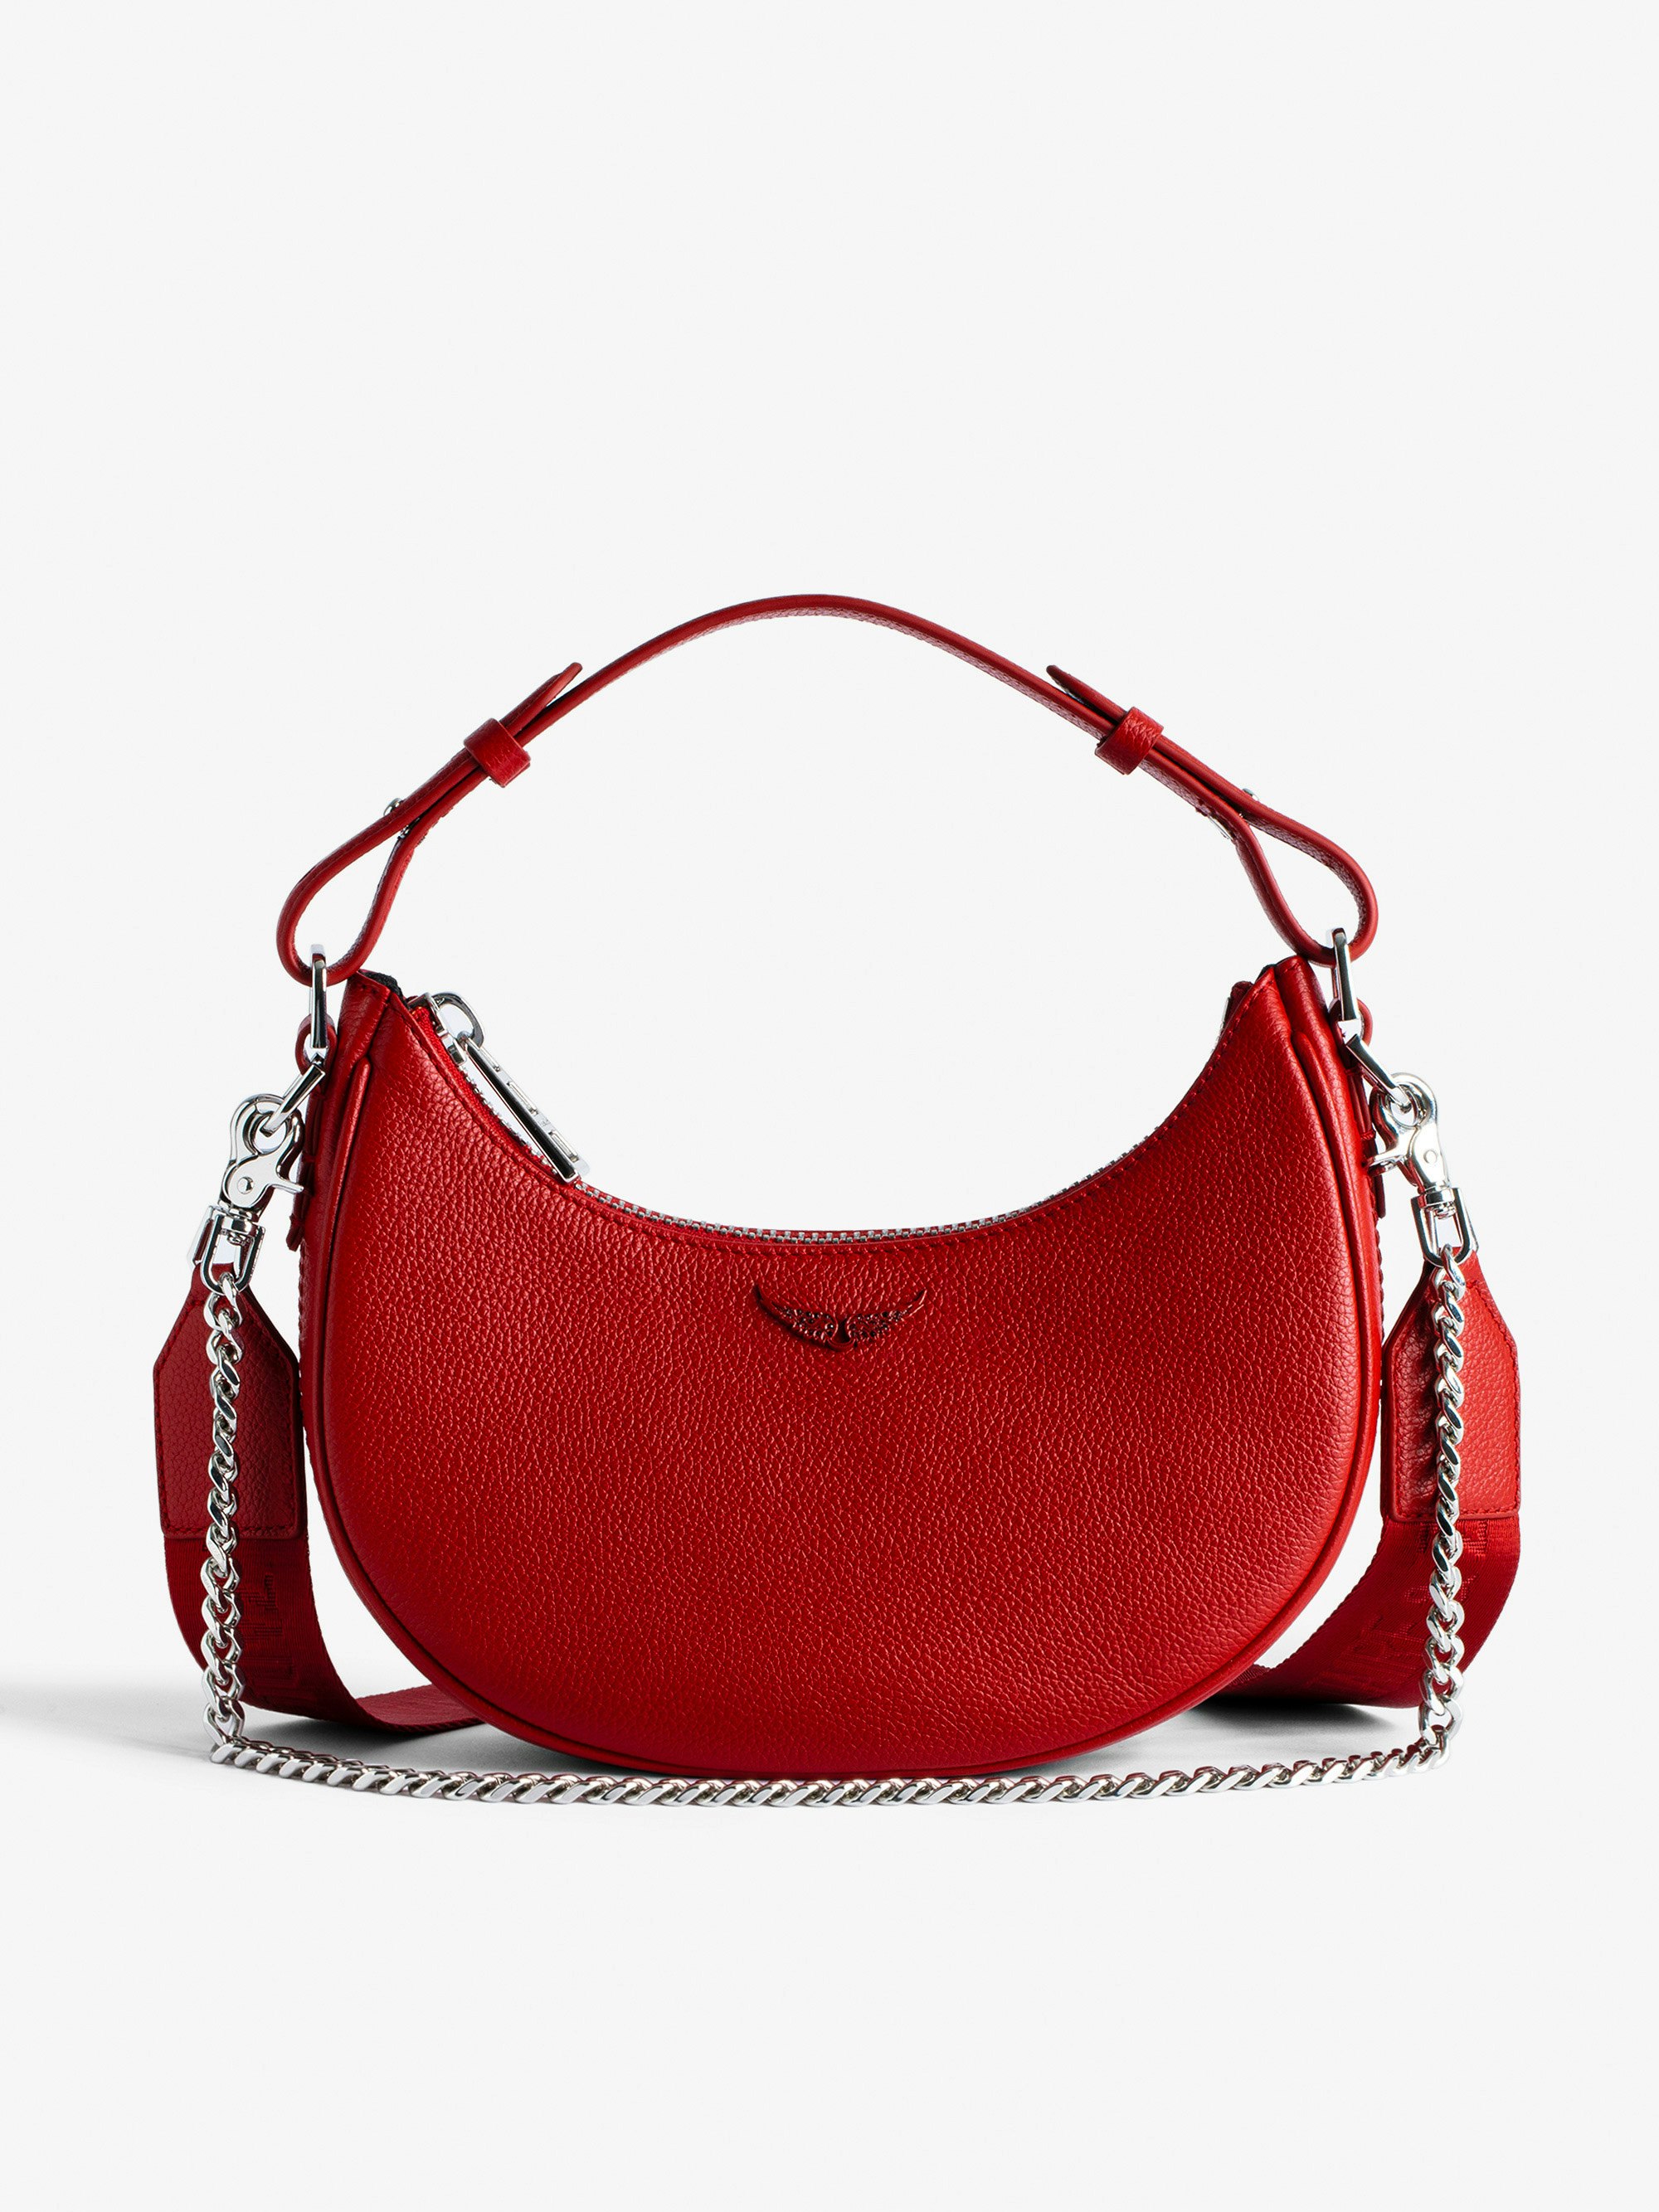 Tasche Moonrock - Halbmondtasche für Damen aus rotem genarbtem Leder mit kurzem Henkel, Schulterriemen, Kette und Signature-Flügeln.